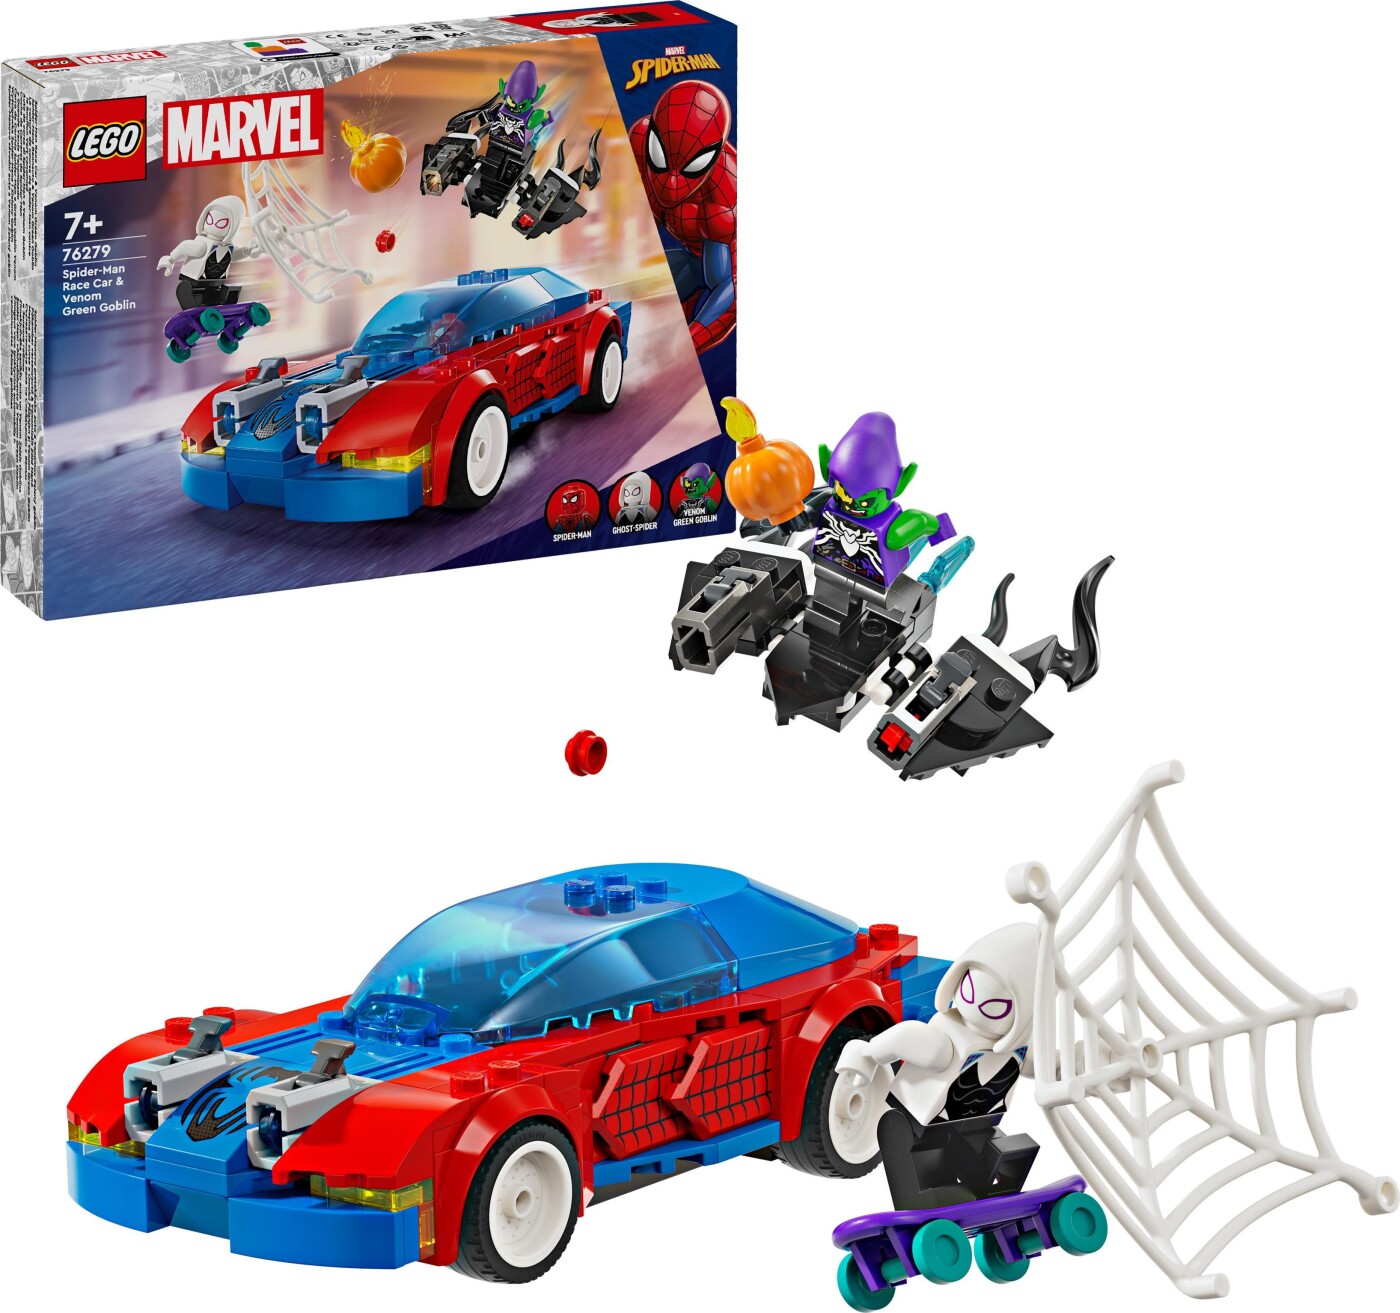 Billede af Lego Super Heroes - Spider-mans Racerbil Og Venom Green Goblin - 76279 hos Gucca.dk